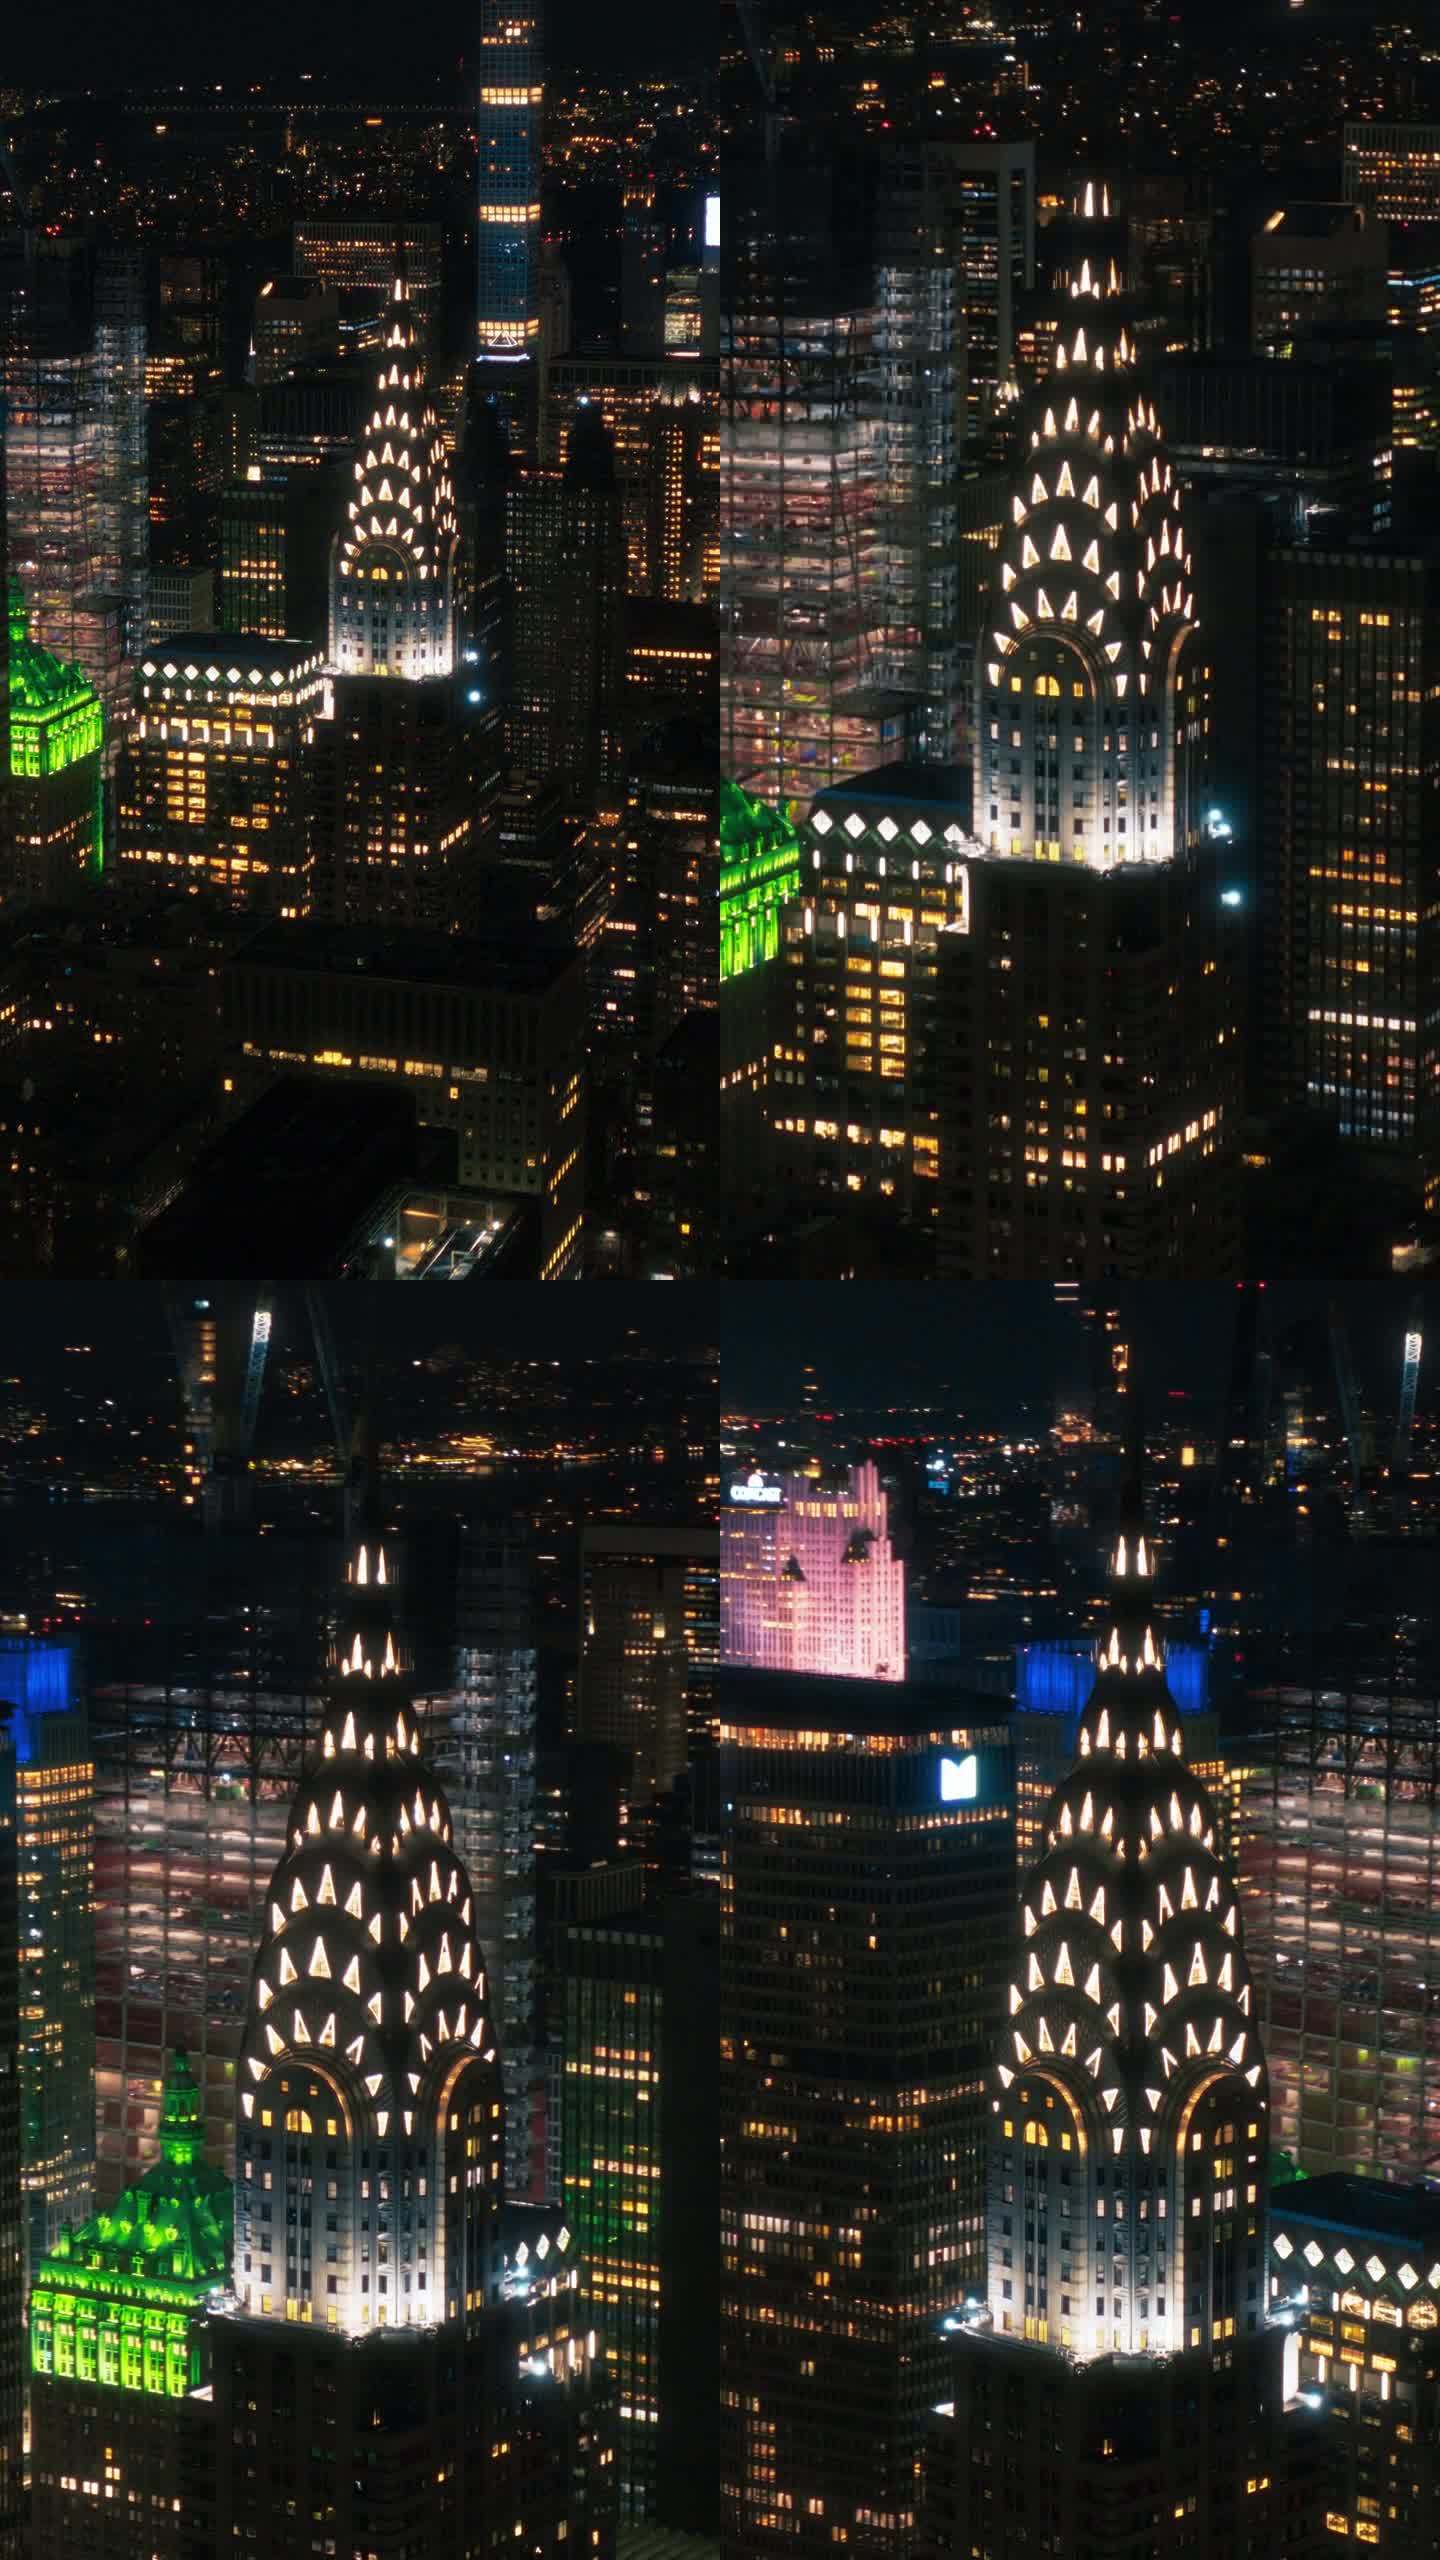 垂直屏幕:曼哈顿下城鸟瞰图。从直升机上拍摄的金融商业区全景夜景。纽约历史悠久的办公大楼和摩天大楼的风